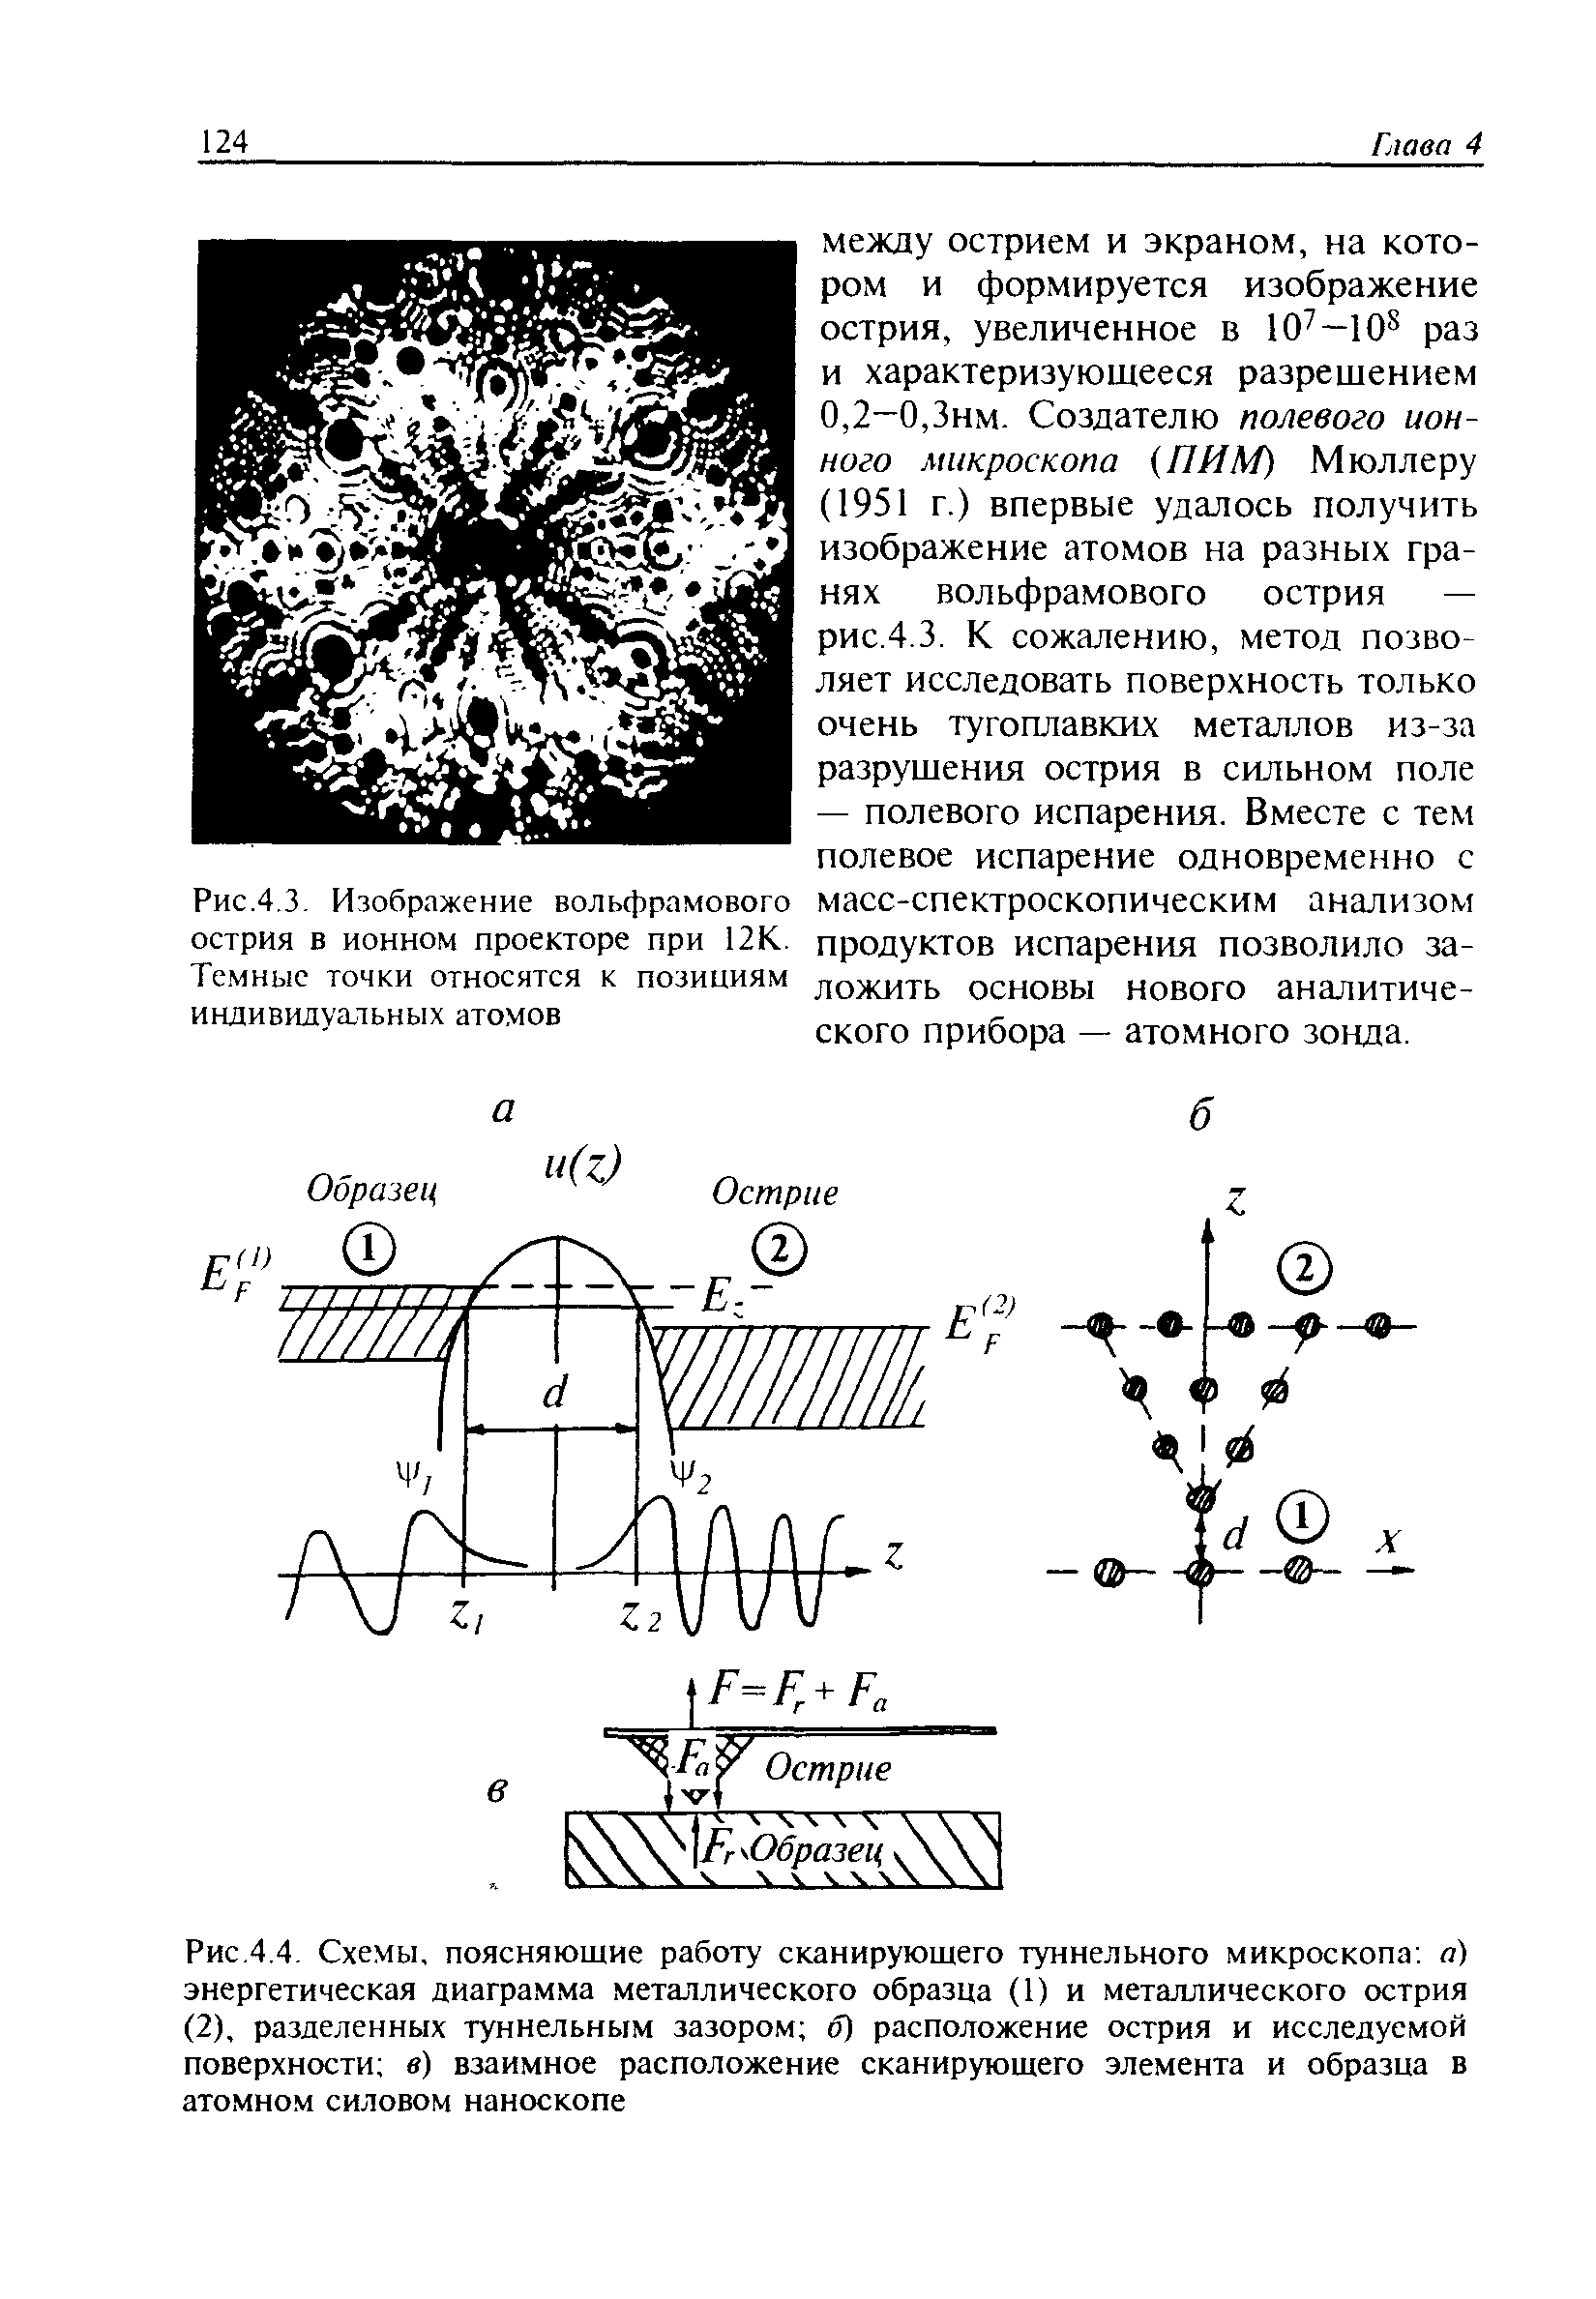 Рис.4.3. Изображение вольфрамового острия в ионном проекторе при 12К. Те.мныс точки относятся к позициям индивидуатьных атомов
